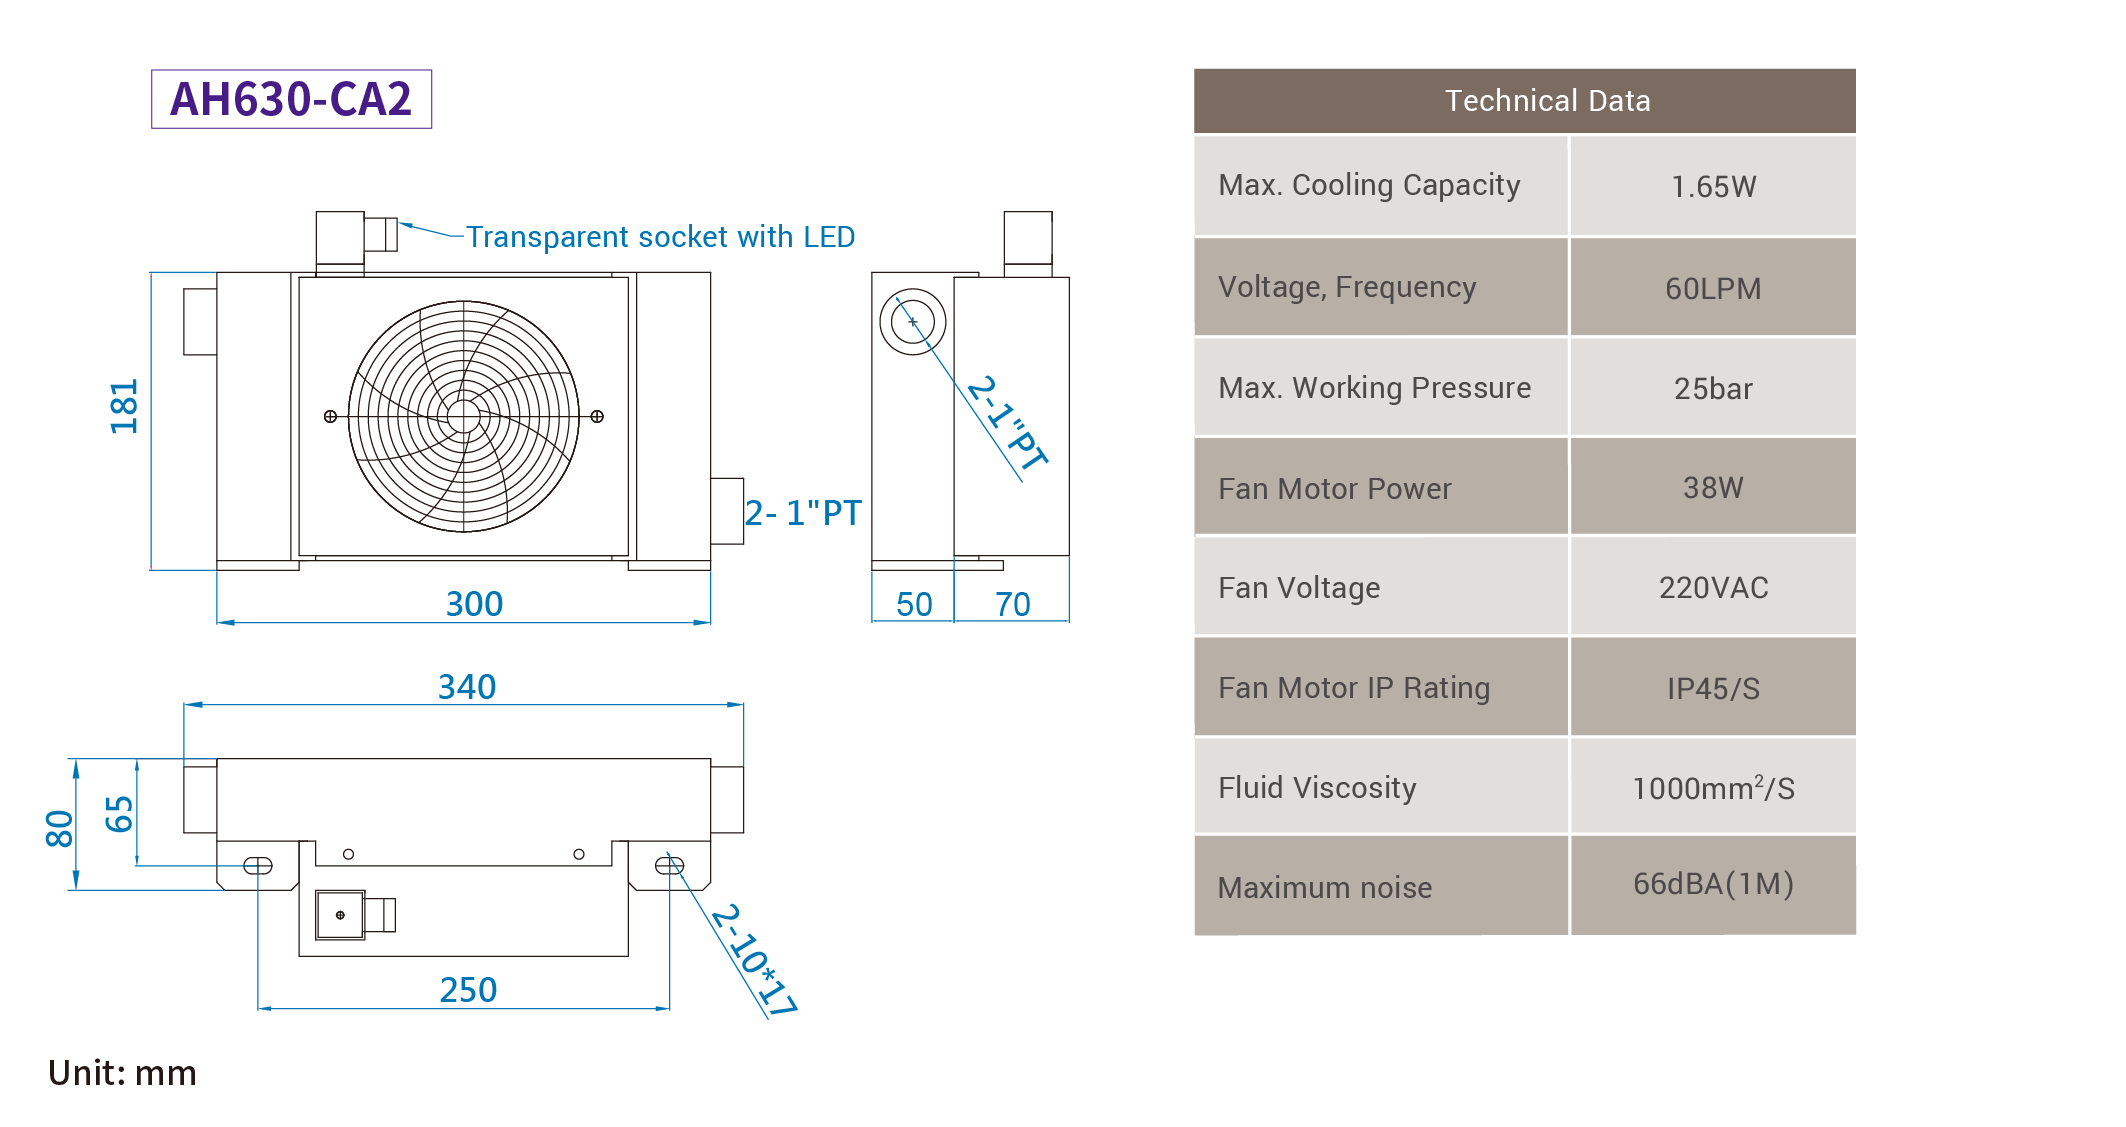 CMLMedium &amp; summus pressura aer refrigeratus coolers, mensurae, dimensio AH630-CA2